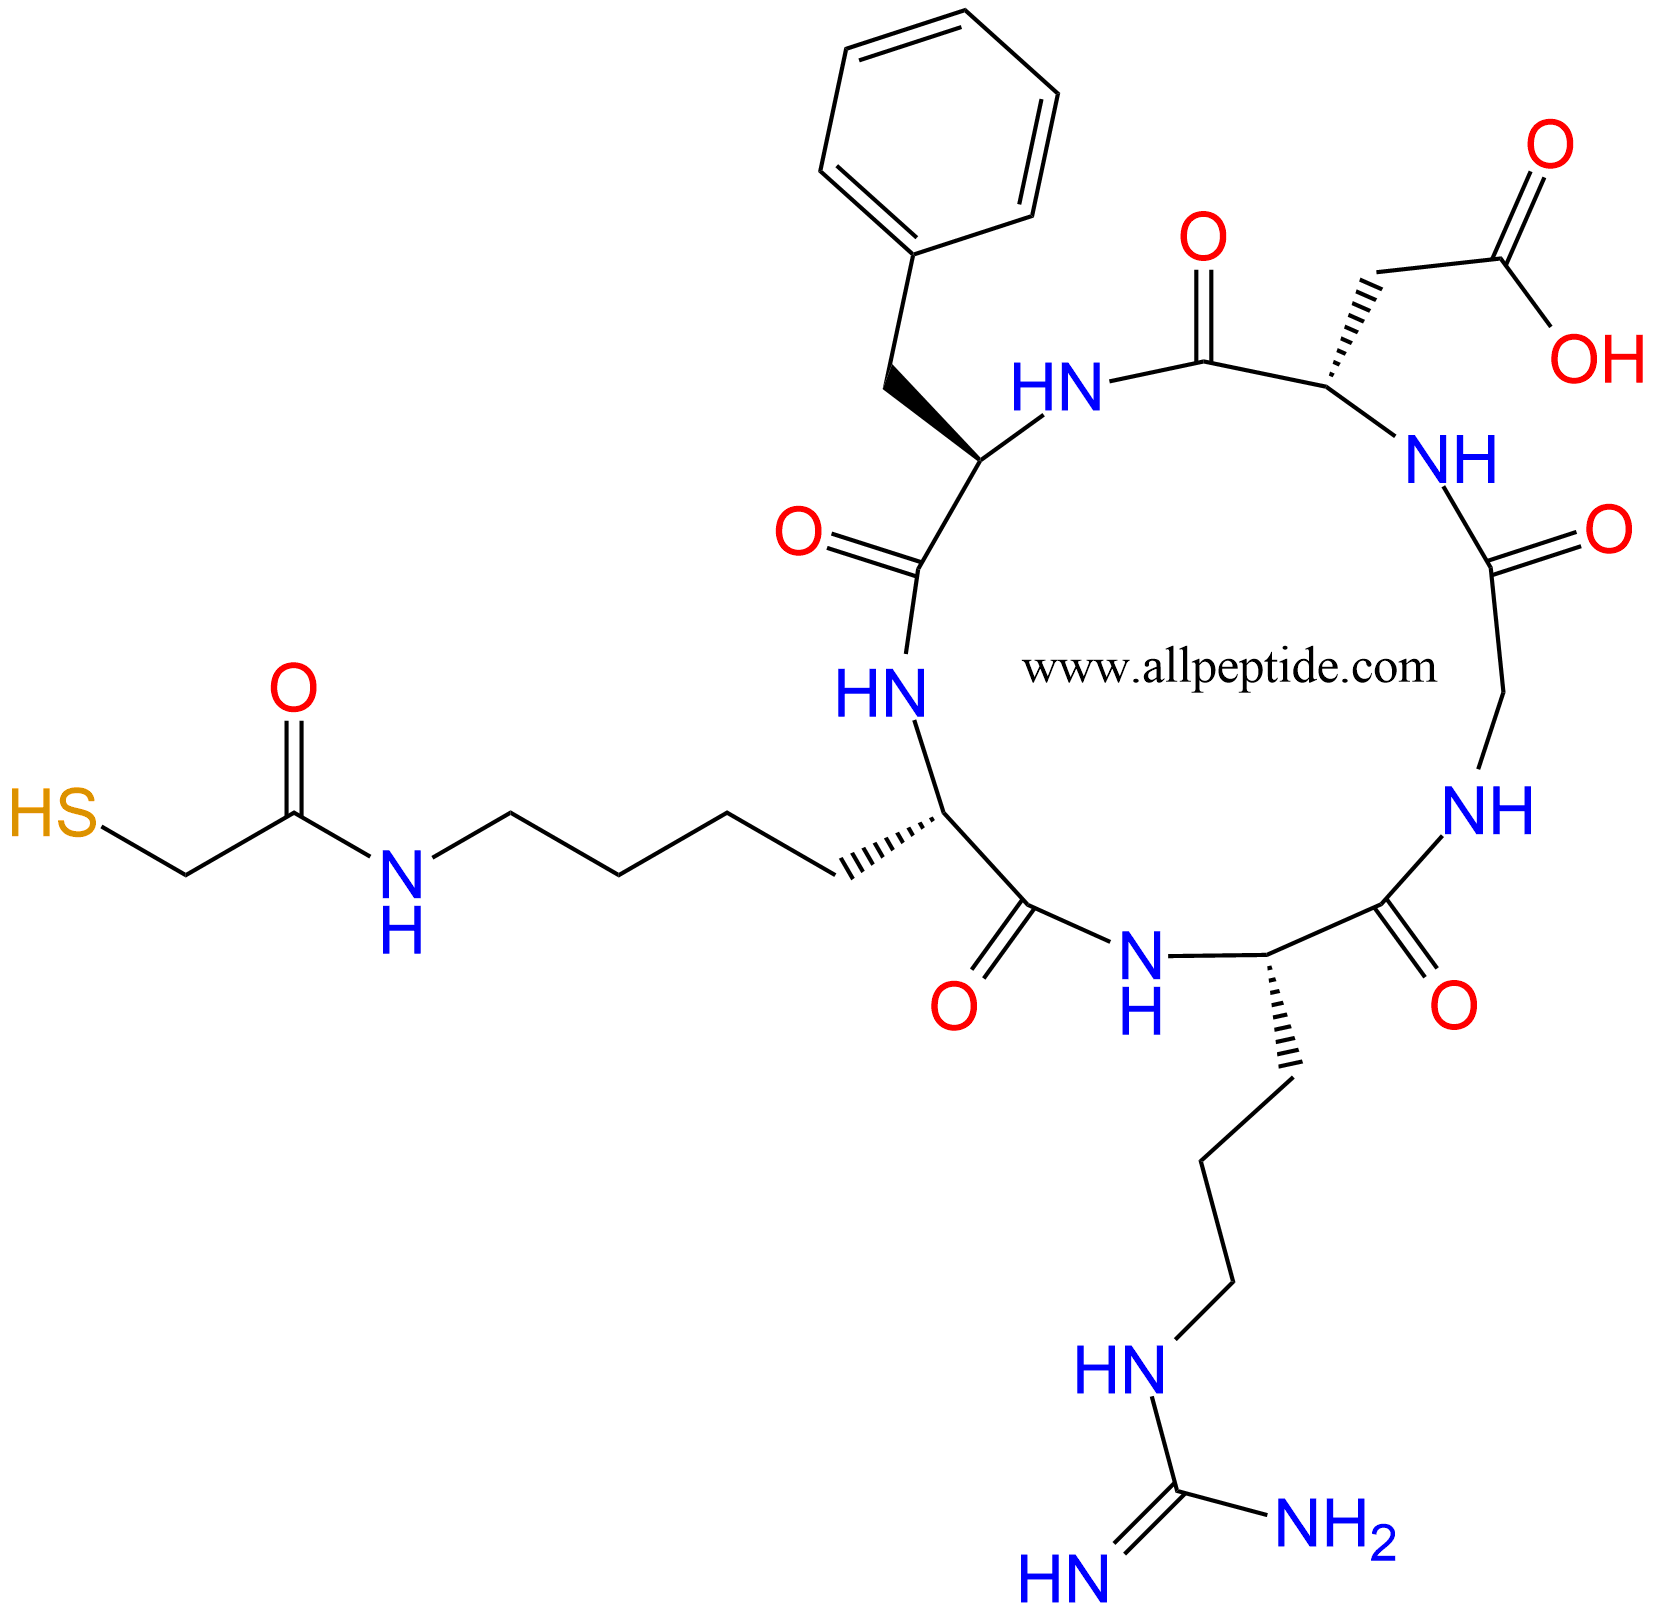 多肽生物产品cyclo(RGDfK-COCH2SH)